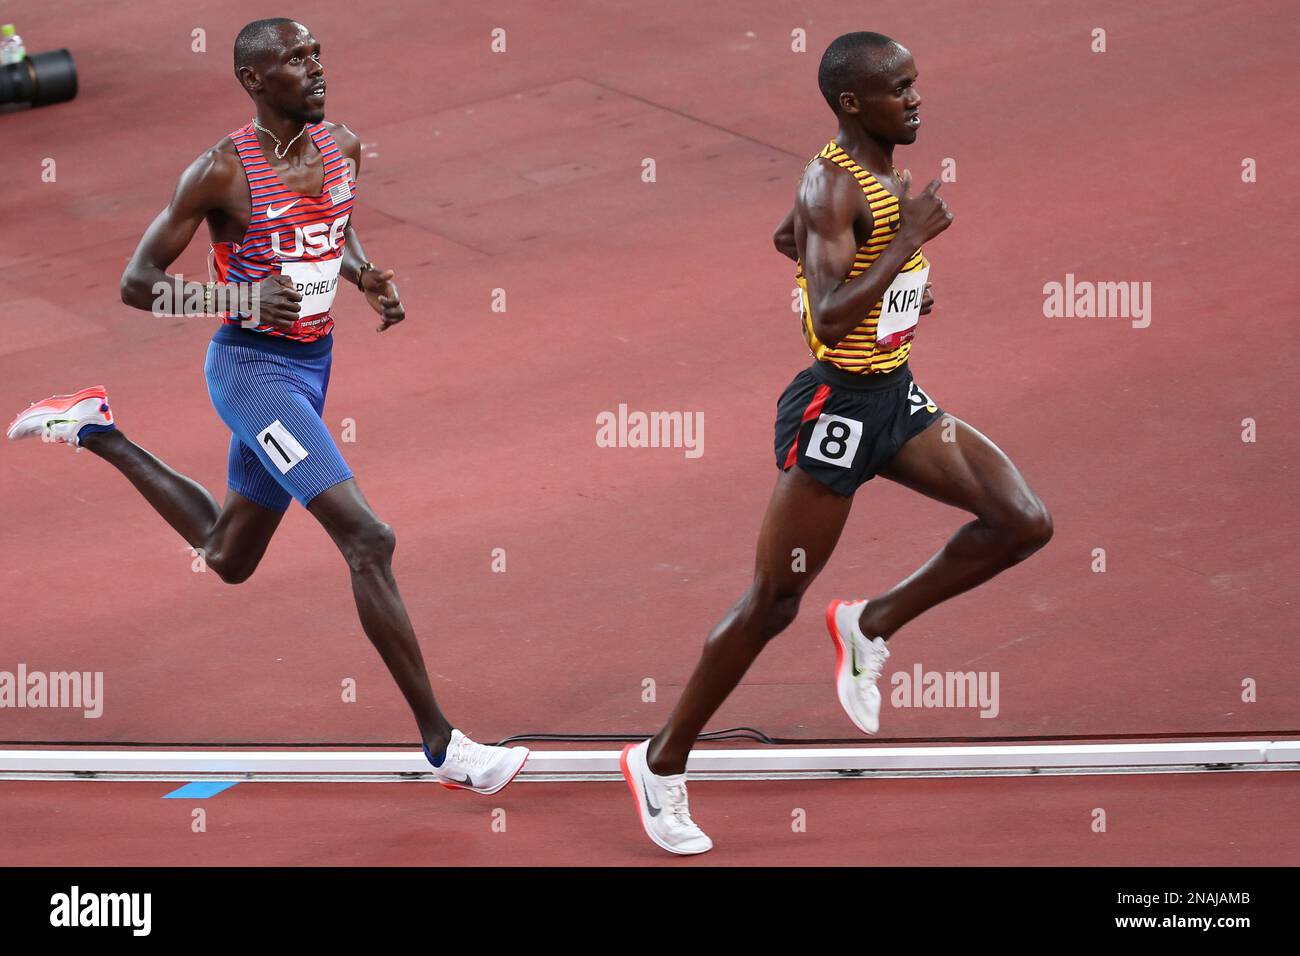 06 AOÛT 2021 - Tokyo, Japon : Jacob Kiplimo, de l'Ouganda, devant Paul Chelimo, des États-Unis, lors de la finale Athletics Men 5 000m à l'Olym de Tokyo 2020 Banque D'Images